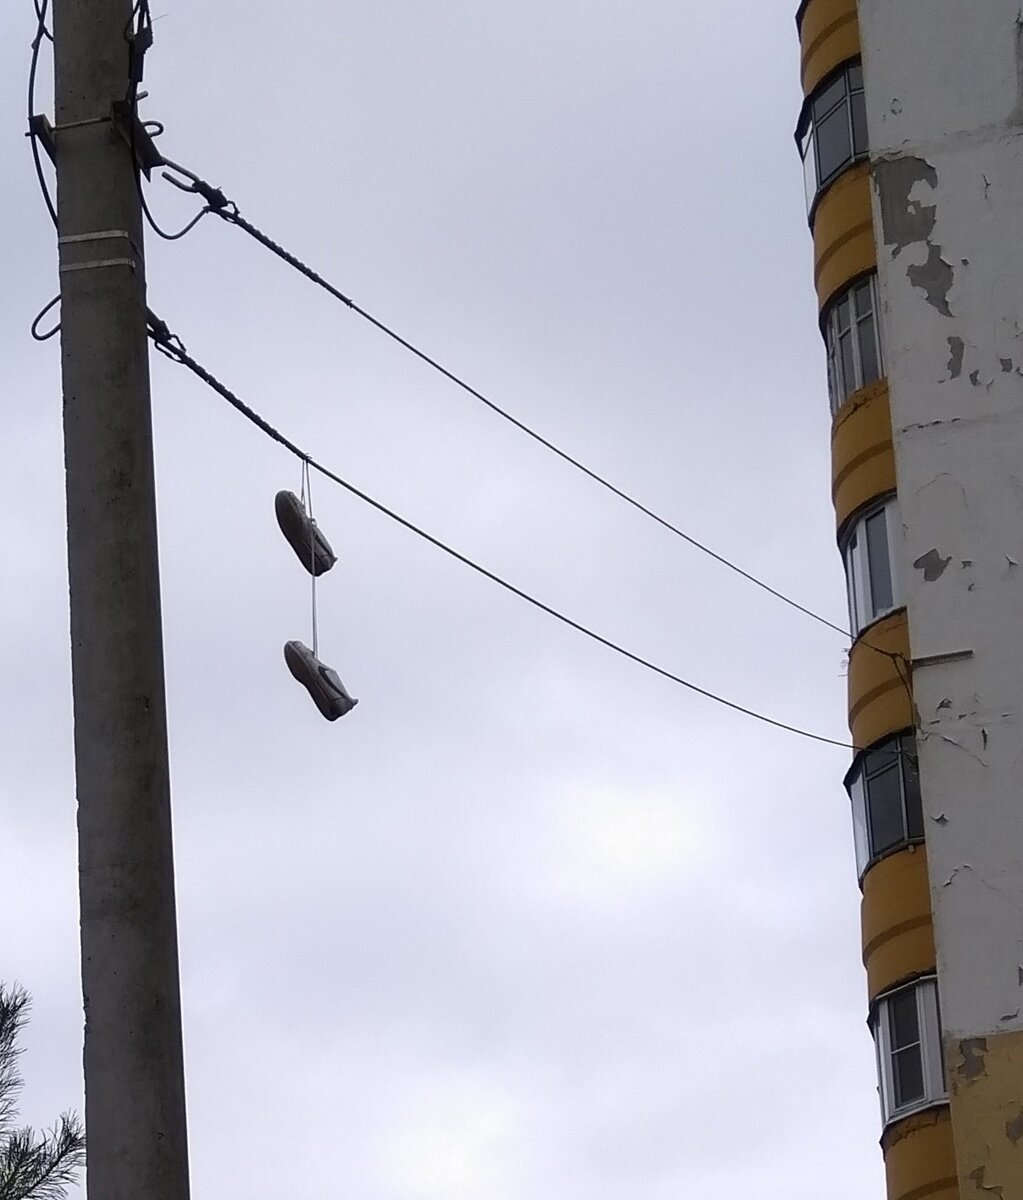 Что значат кроссовки на проводах в россии